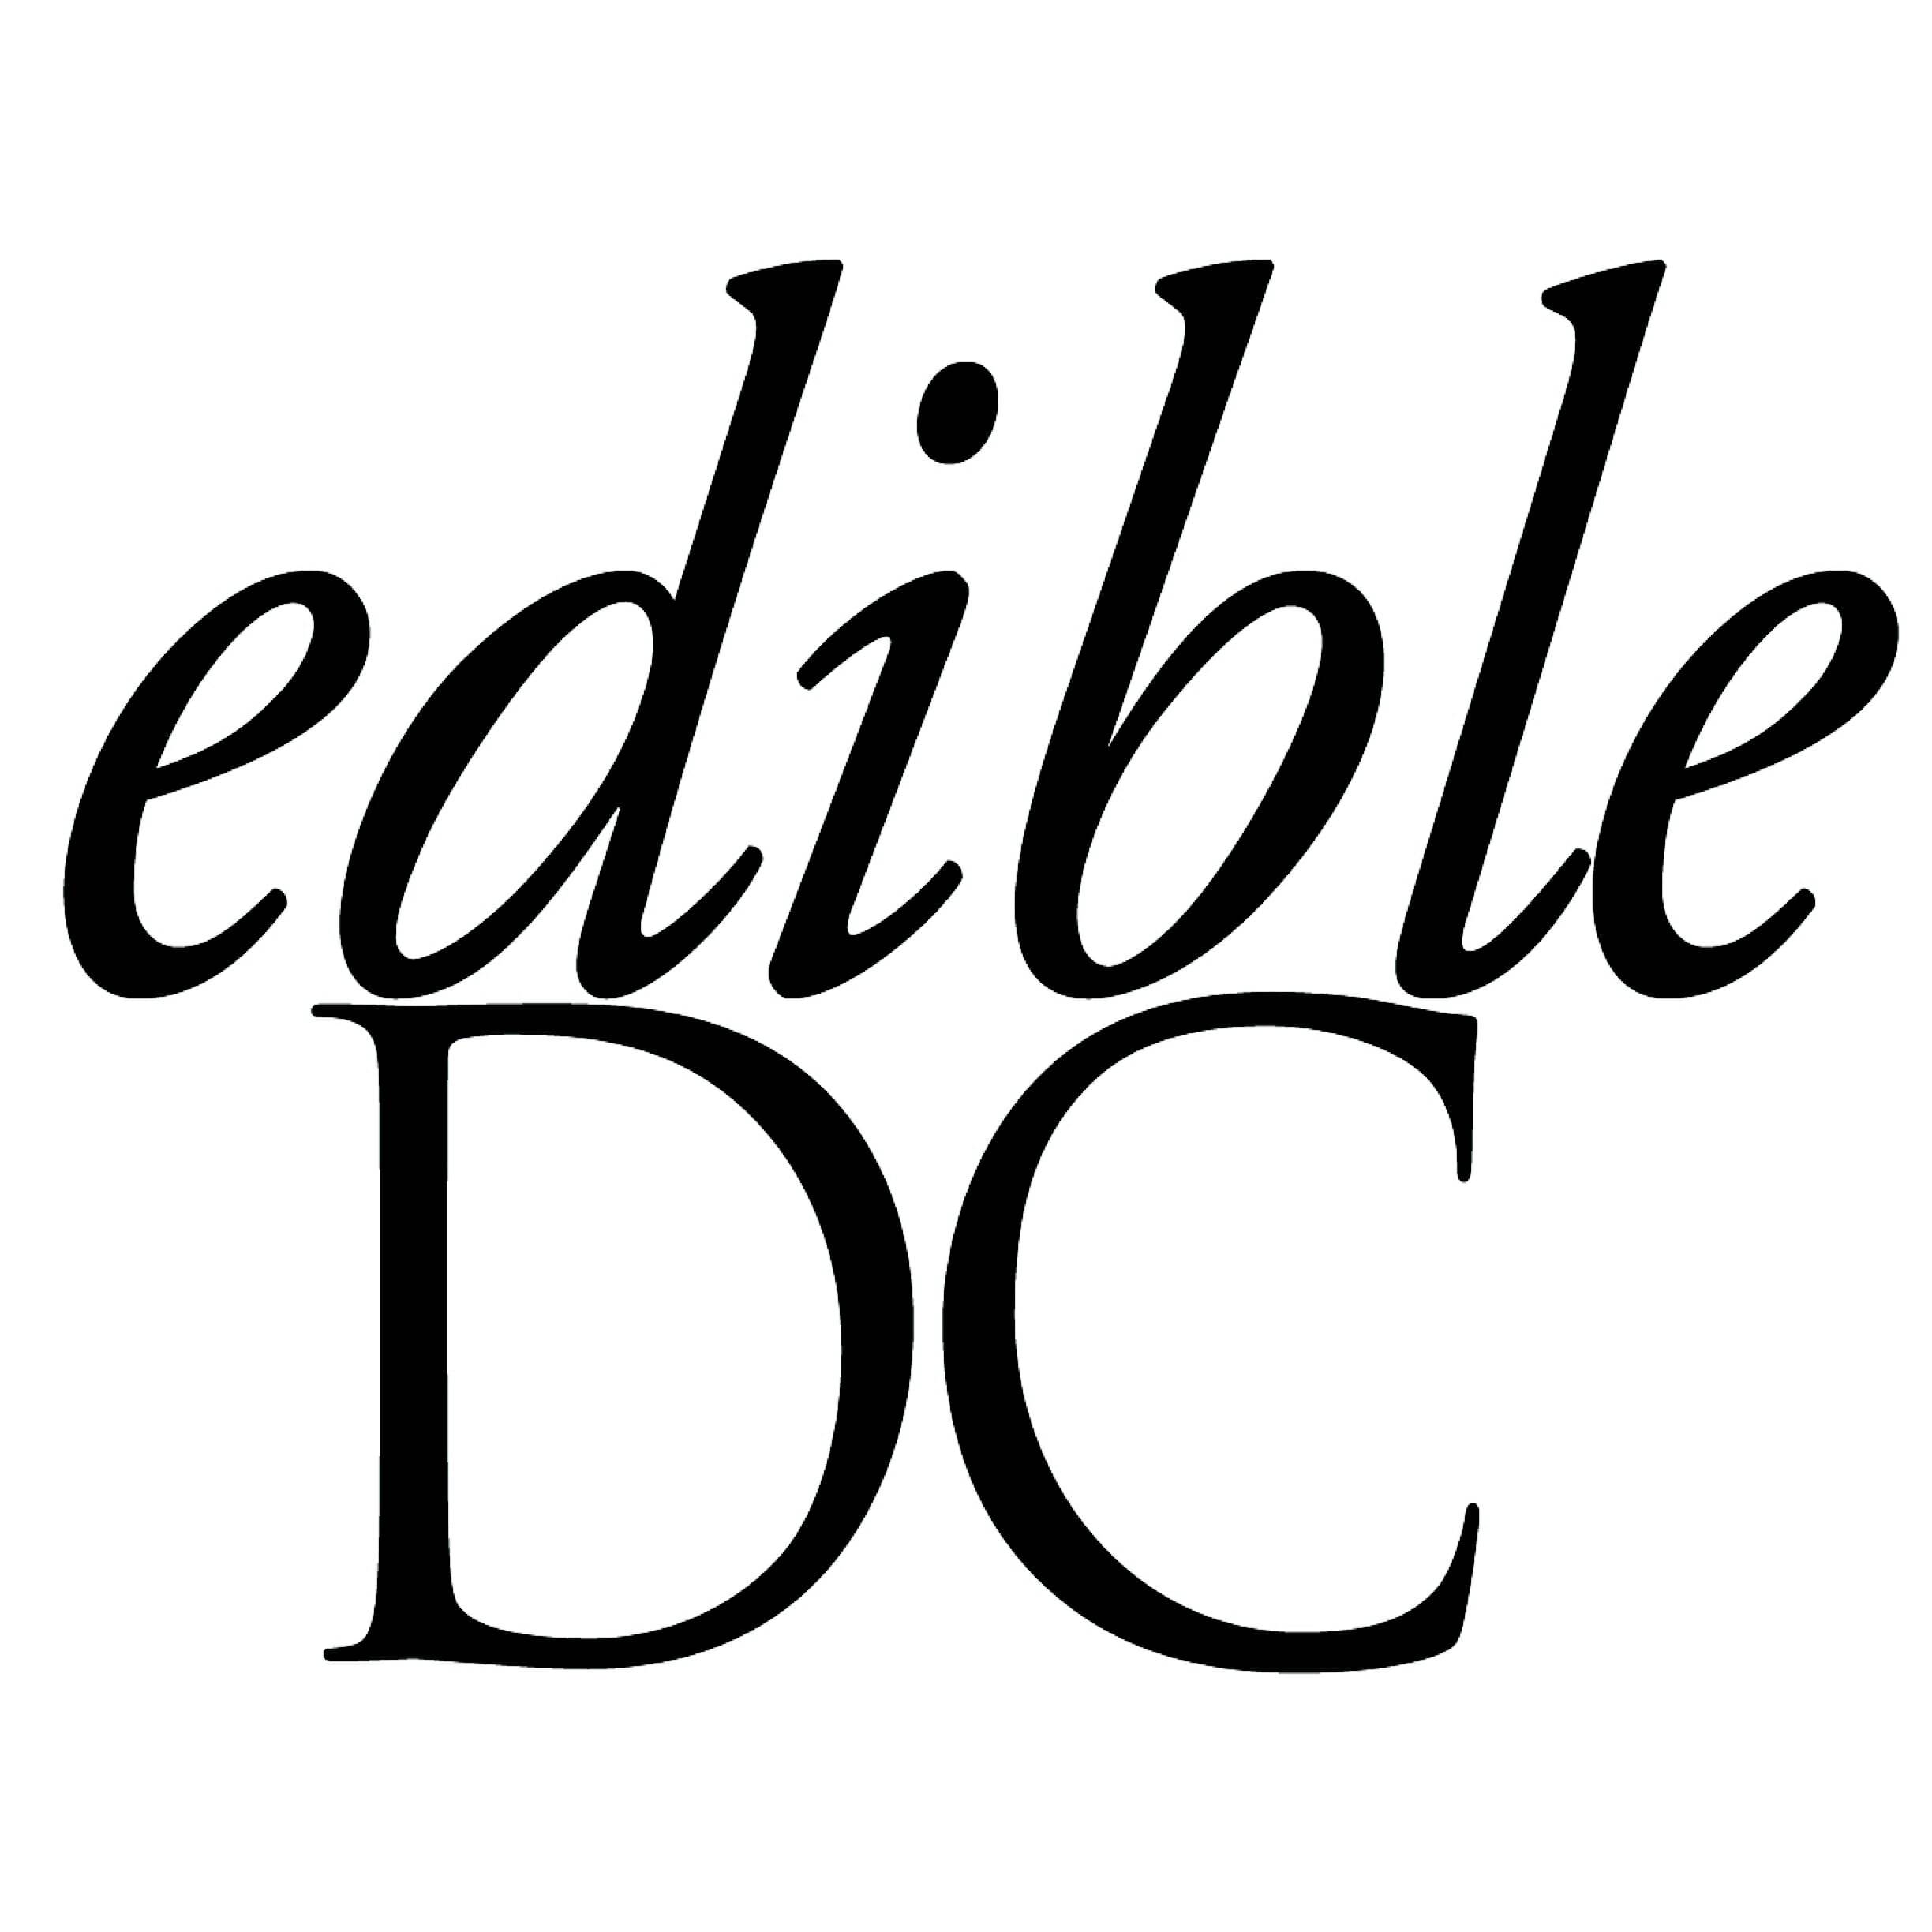 Edible DC